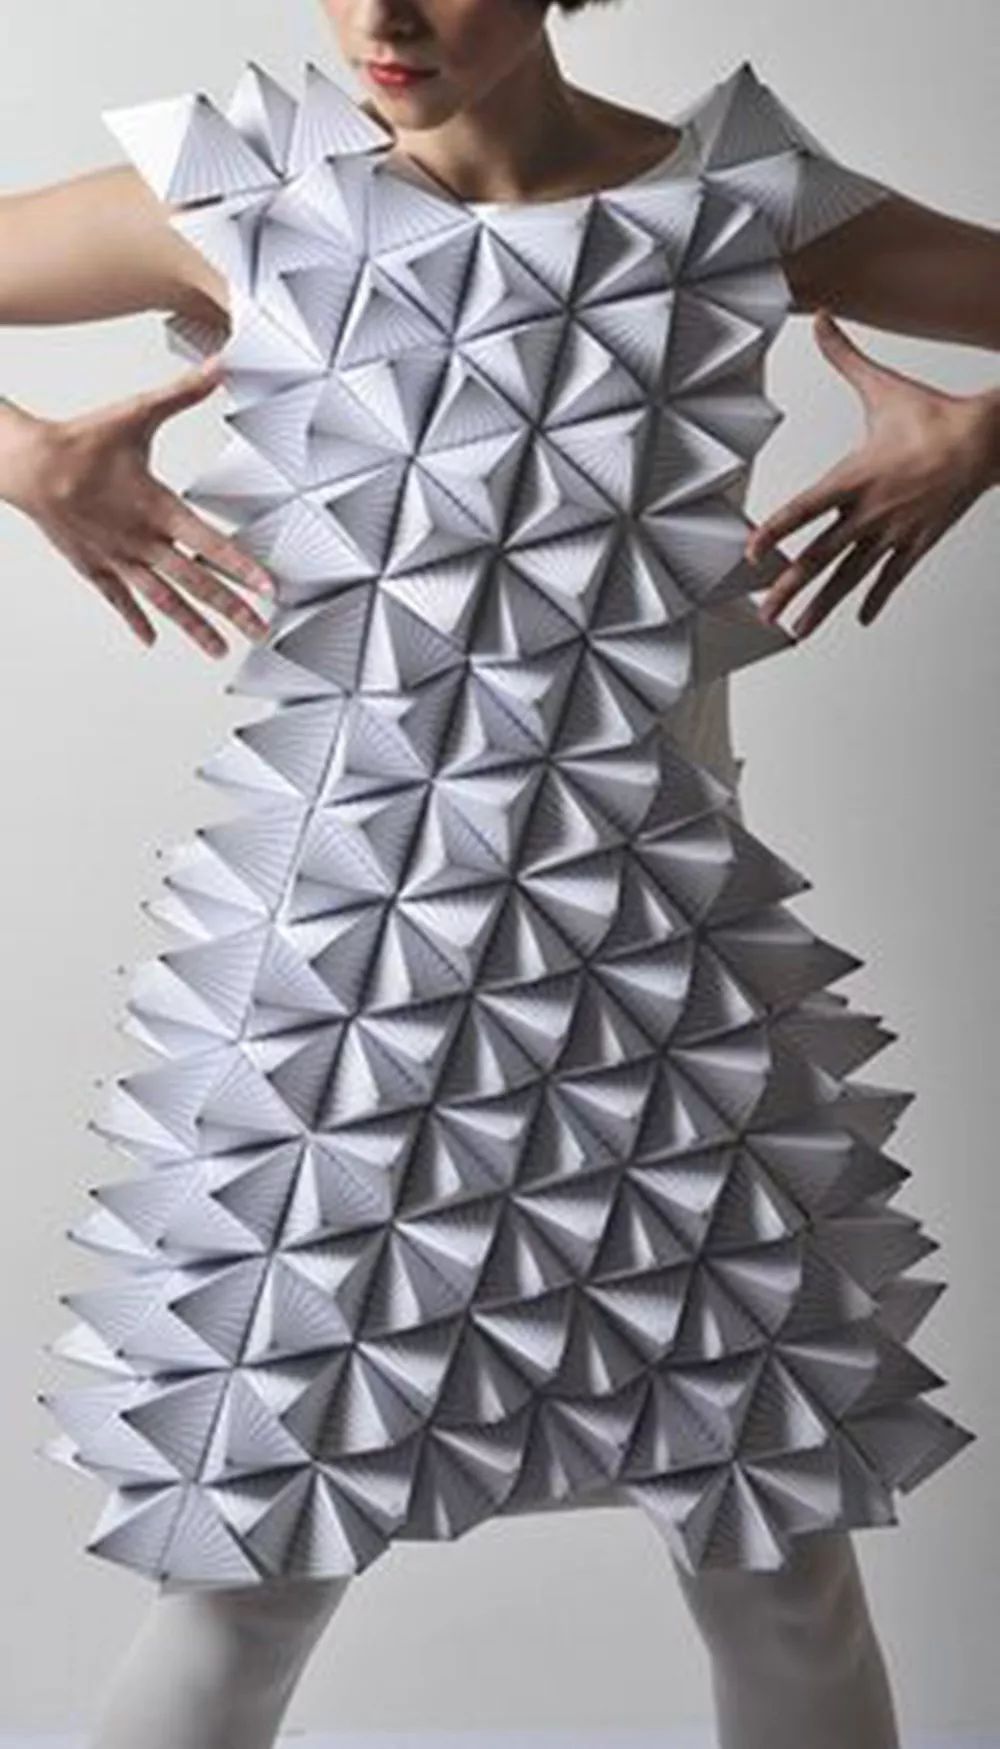 堆叠是将服装面料或其他材料按照设计需要一层层堆放叠合